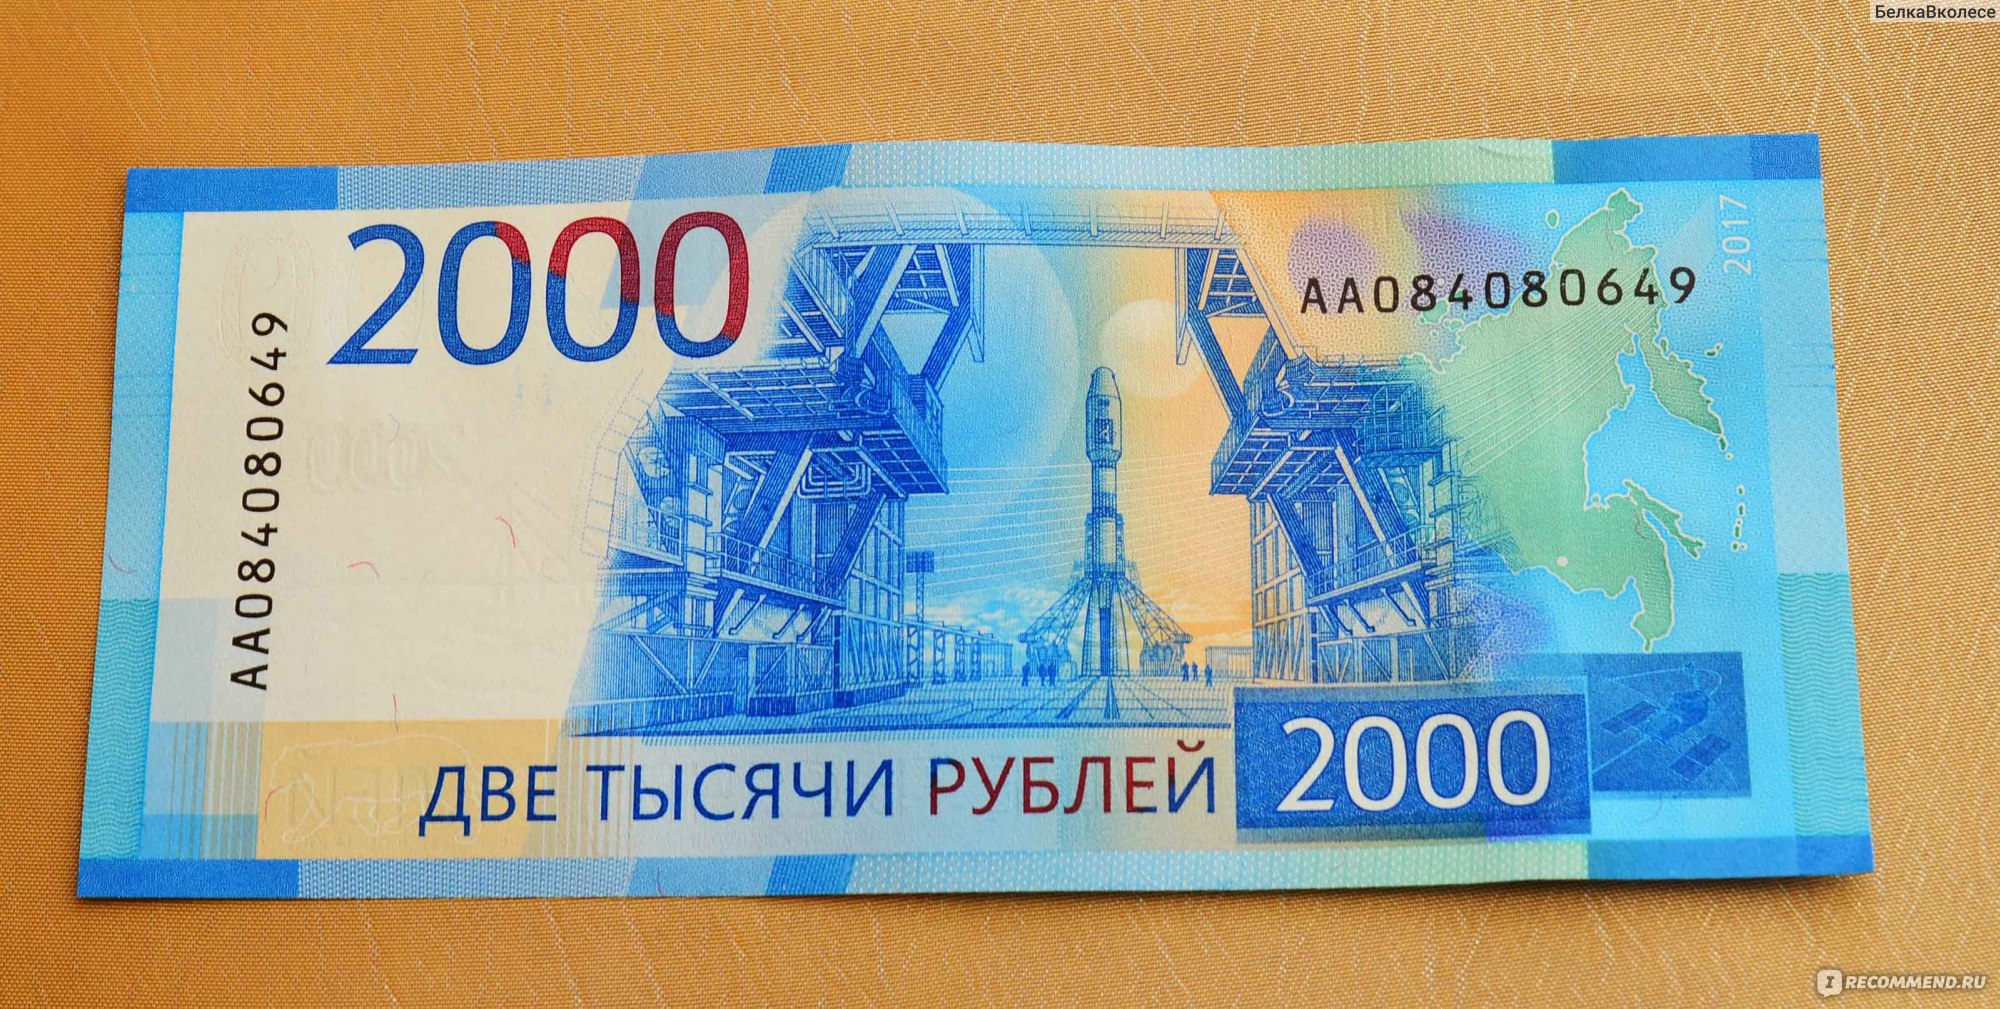 Две 500 в рублях. Купюра 2000 рублей. Банкнота 200 и 2000 рублей. 2000 Рублей бумажка. 200 Рублей и 2000 рублей.